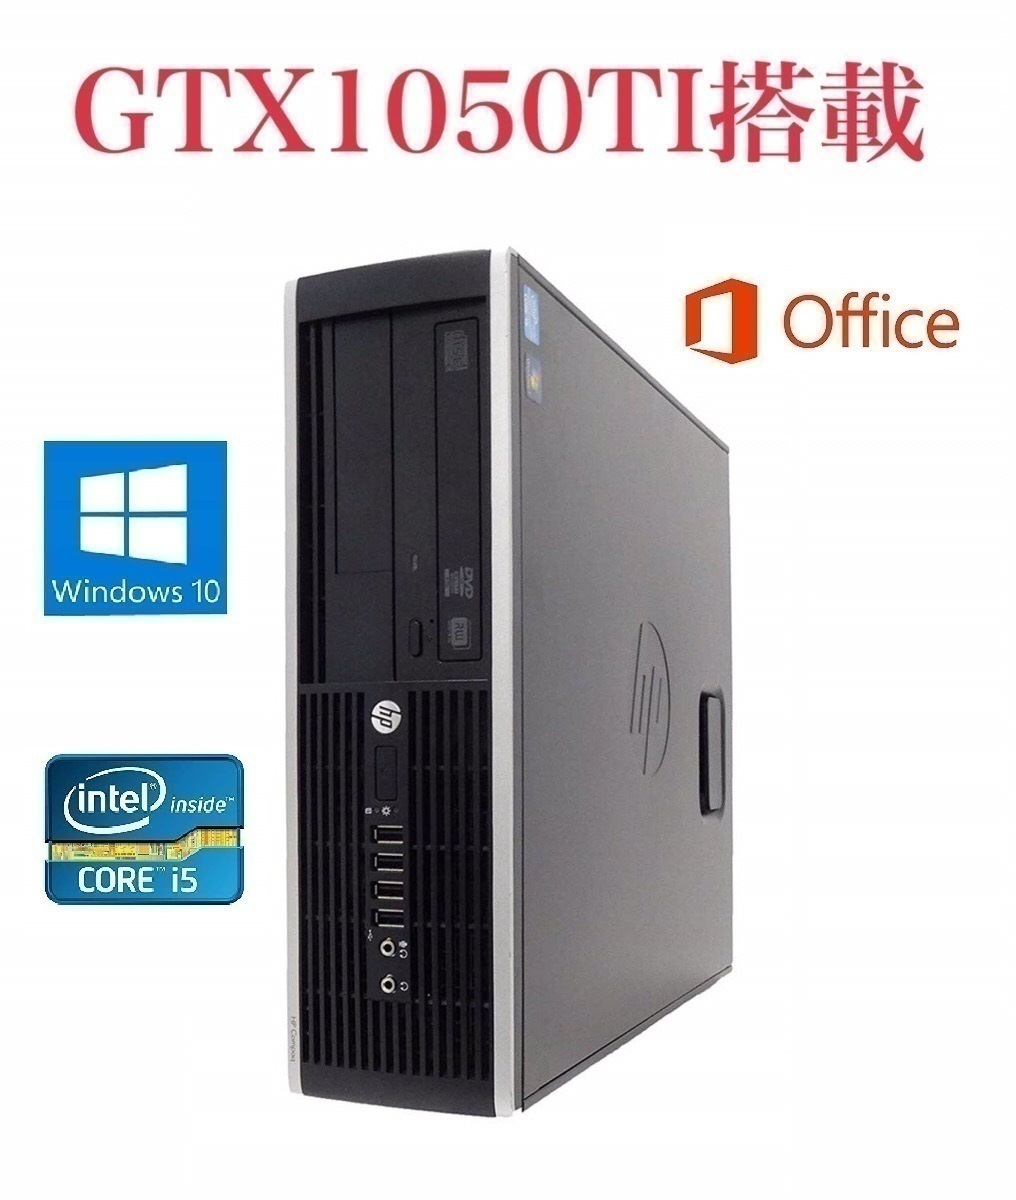 適切な価格 【サポート付き】【GTX1050TI搭載】快速 新品SSD:240GB+HDD:1TB メモリー8GB Windows10 Pro6300 HP 美品 パソコン単体